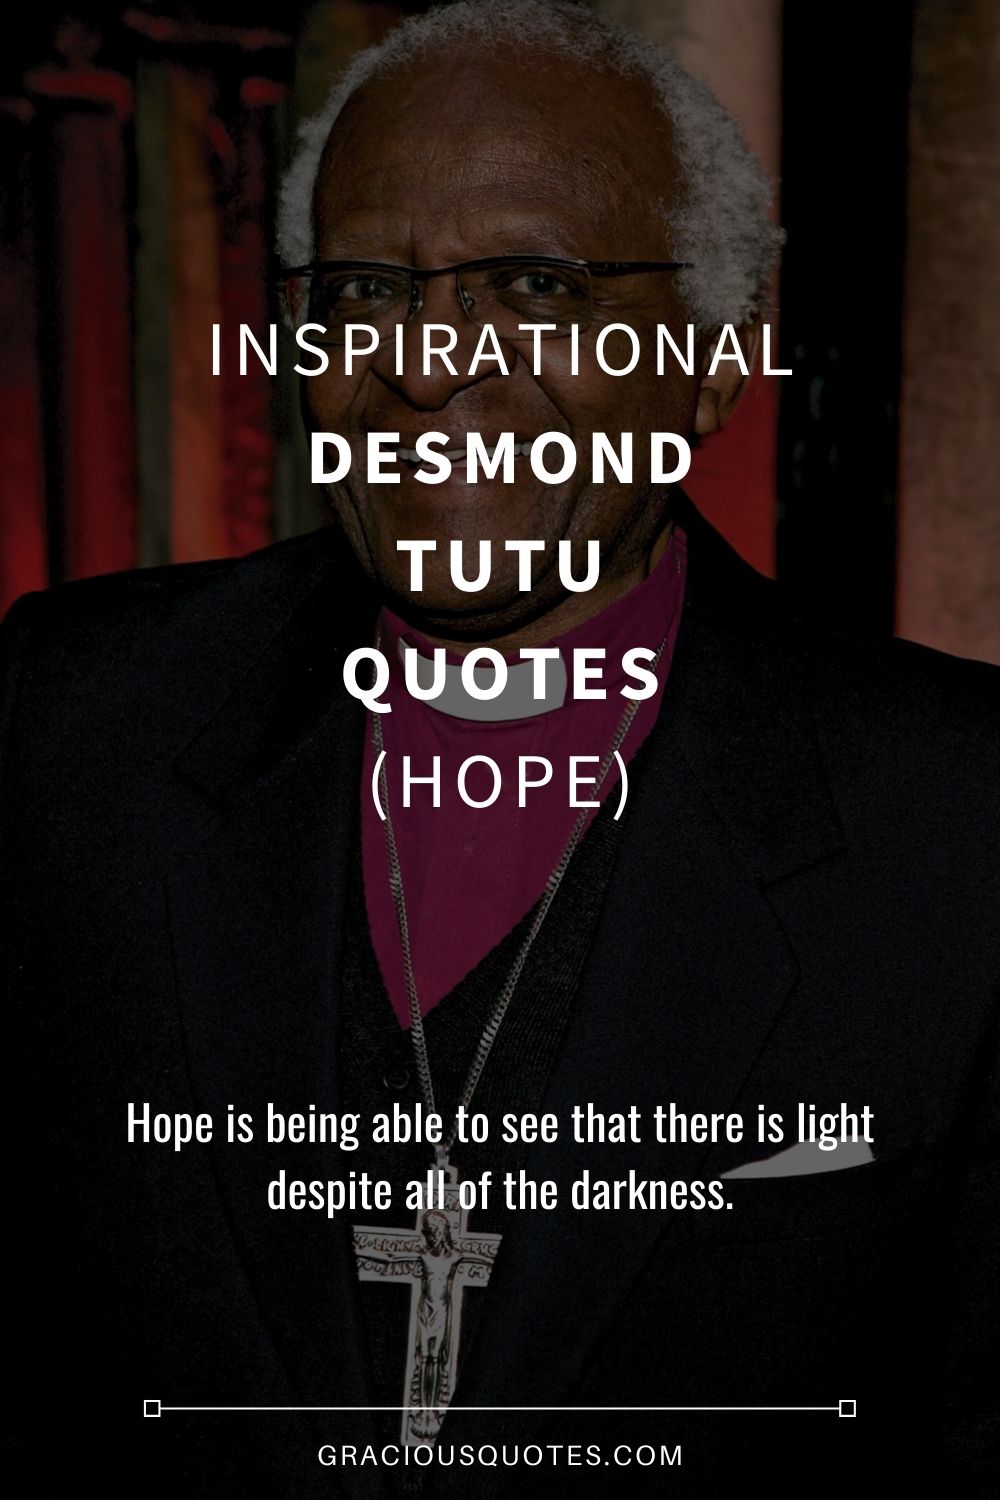 Inspirational Desmond Tutu Quotes (HOPE) - Gracious Quotes